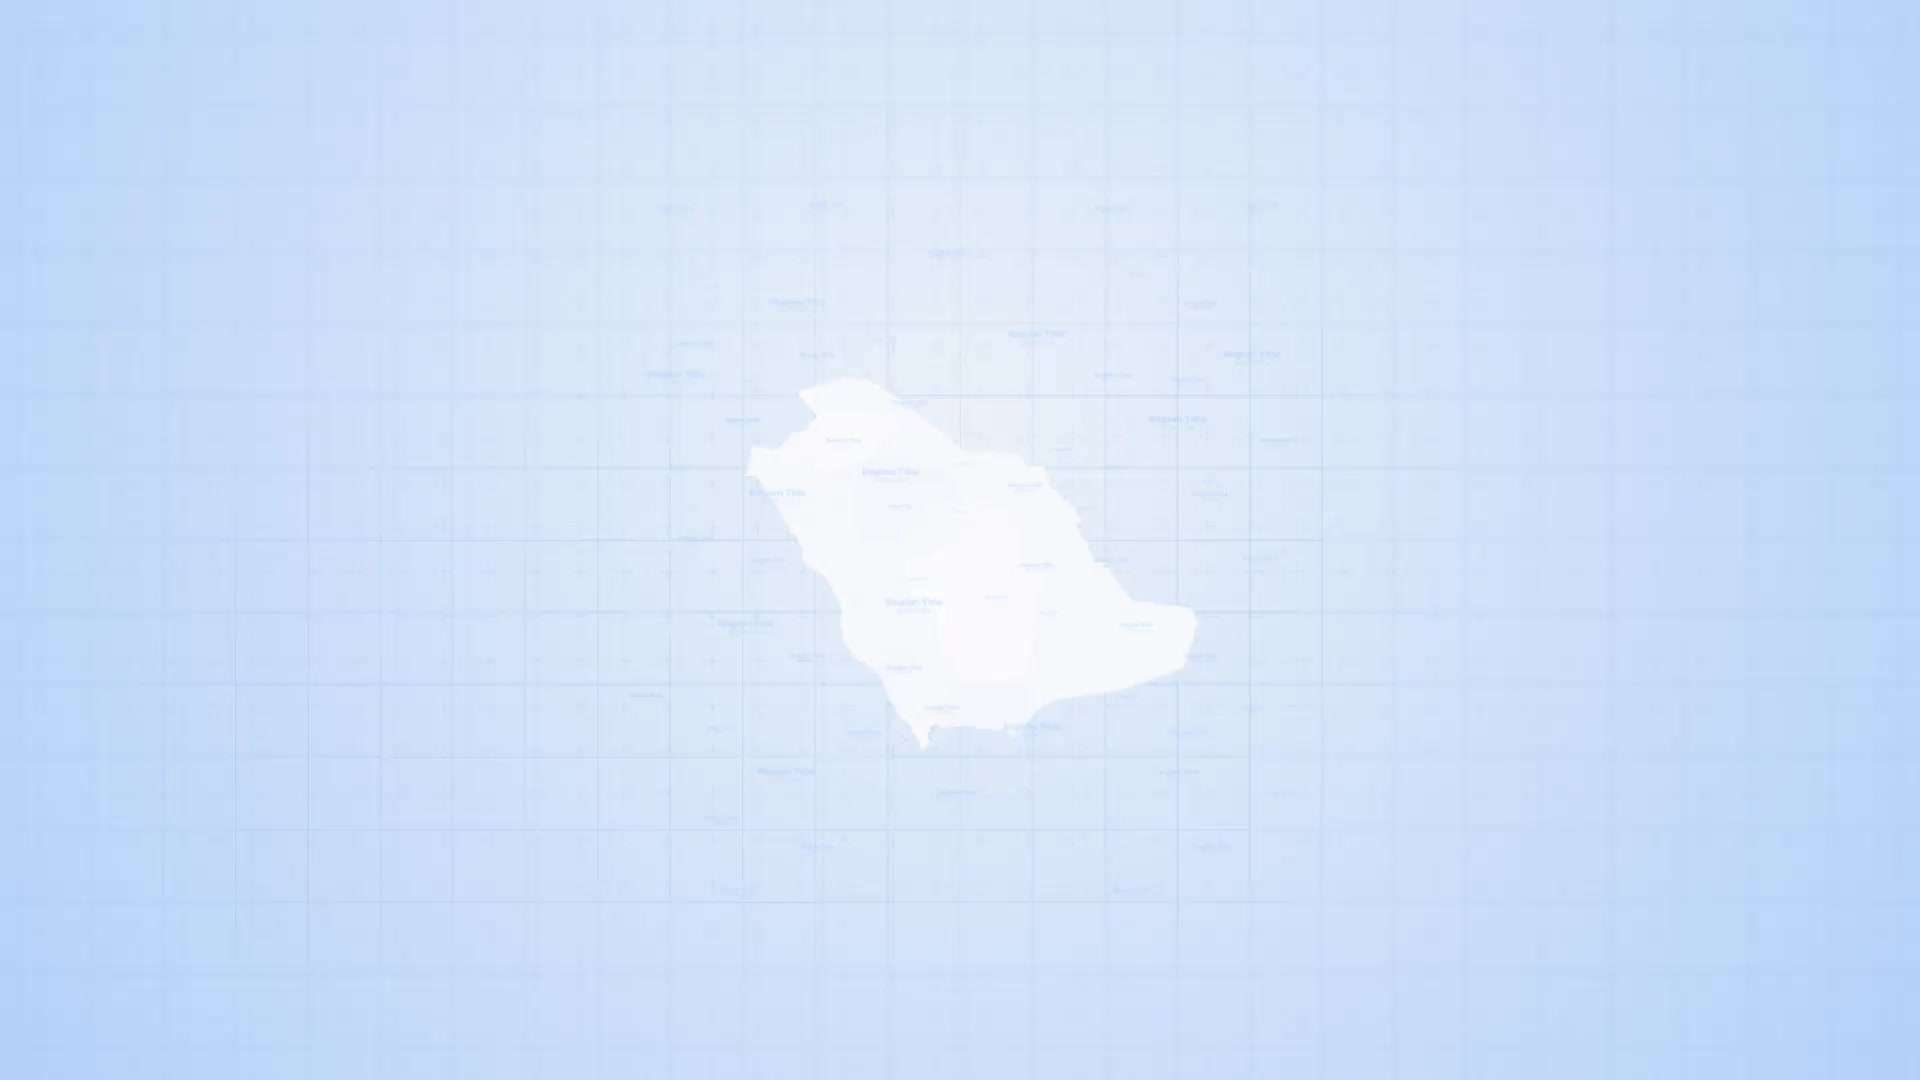 AE模板 | 沙特阿拉伯地图工具包动态动画展示旅游地图地理信息图表